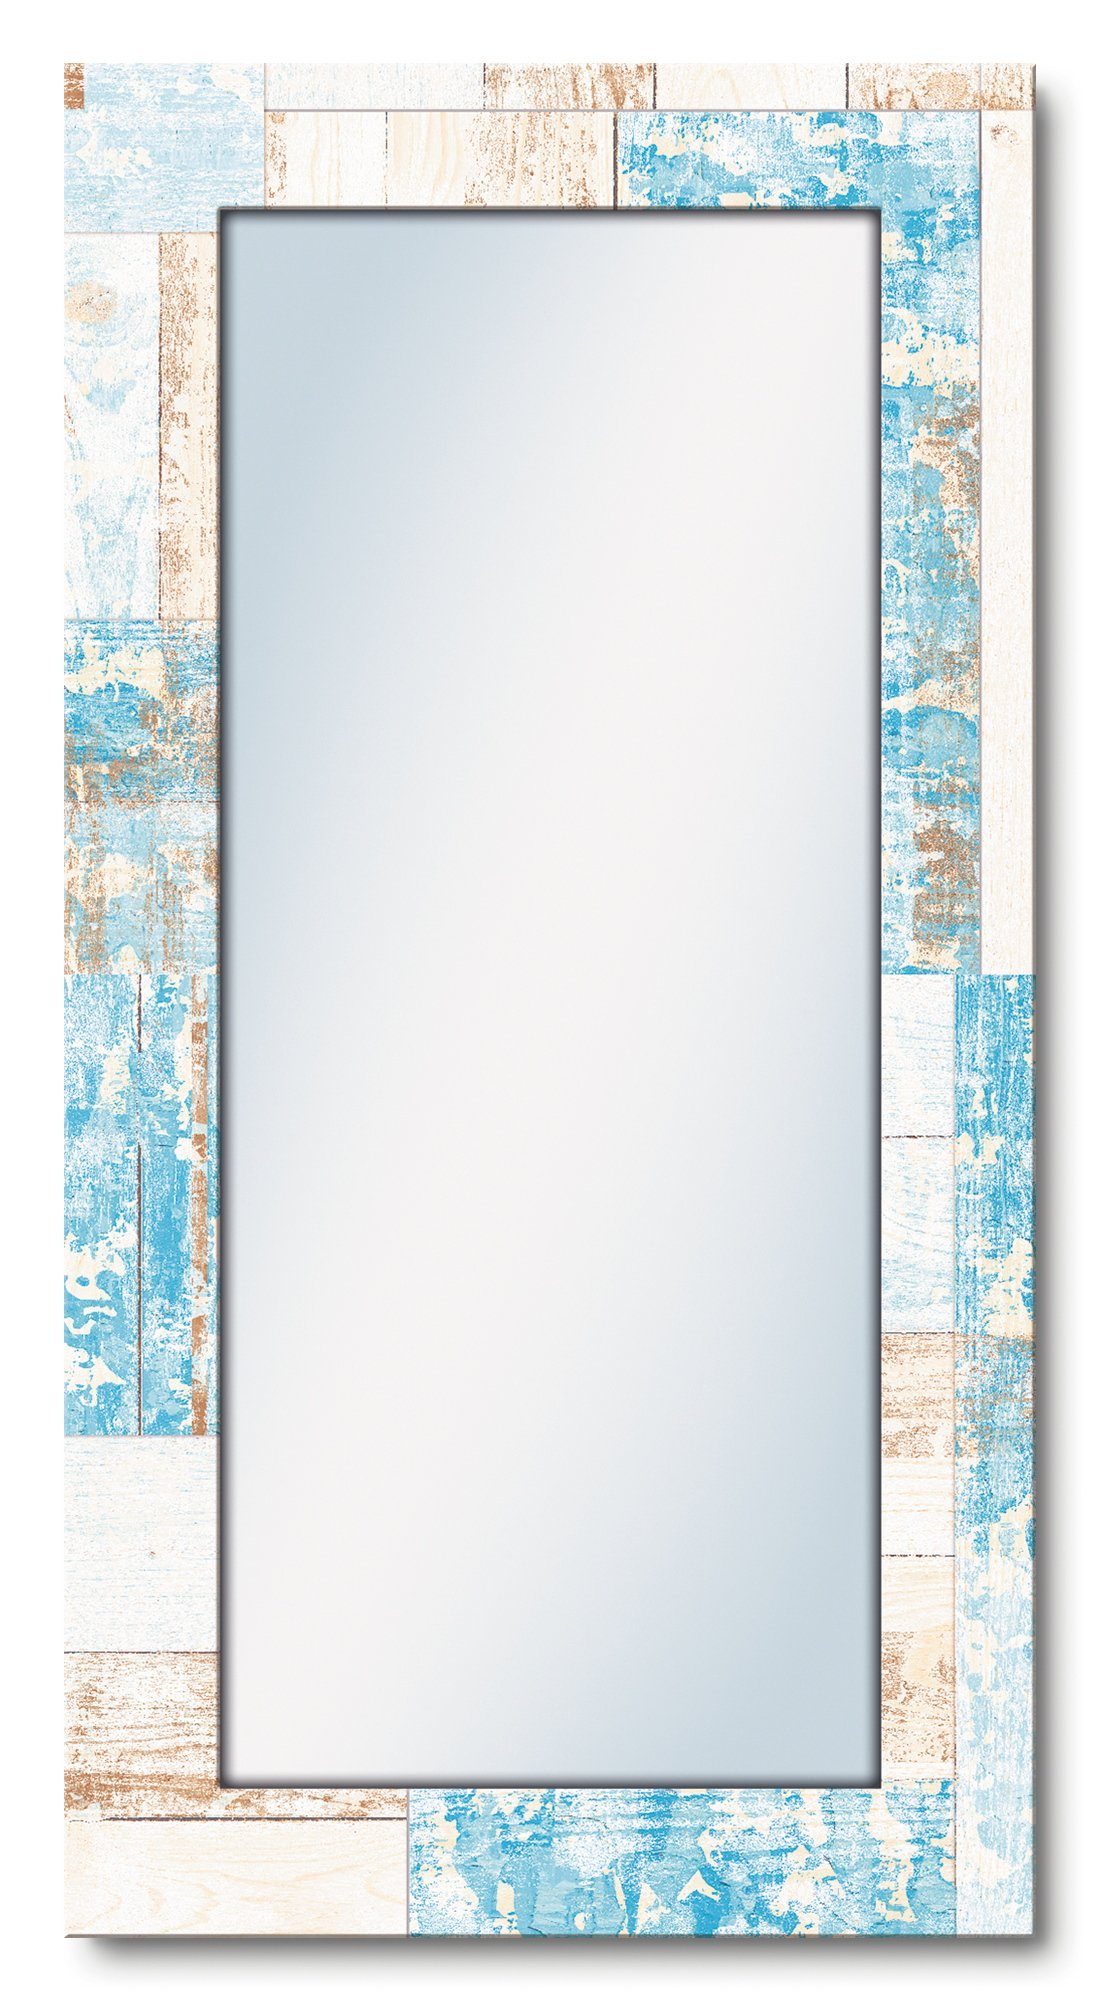 Artland Sierspiegel Maritiem hout ingelijste spiegel voor het hele lichaam met motiefrand, geschikt voor kleine, smalle hal, halspiegel, mirror spiegel omrand om op te hangen